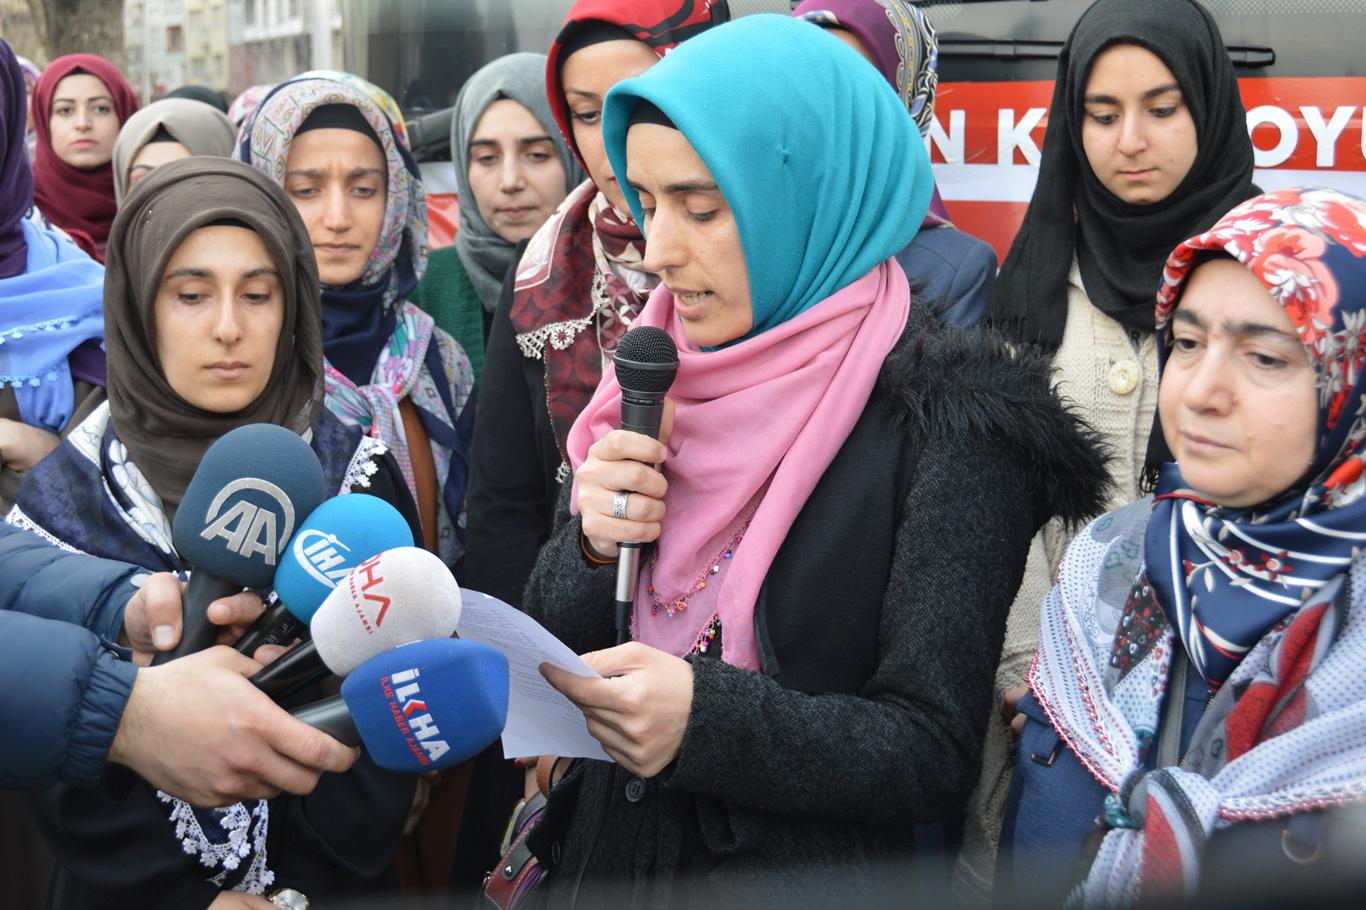 "Suriye’deki Müslüman kız kardeşlerimizin acı çığlıklarını duyuyoruz"